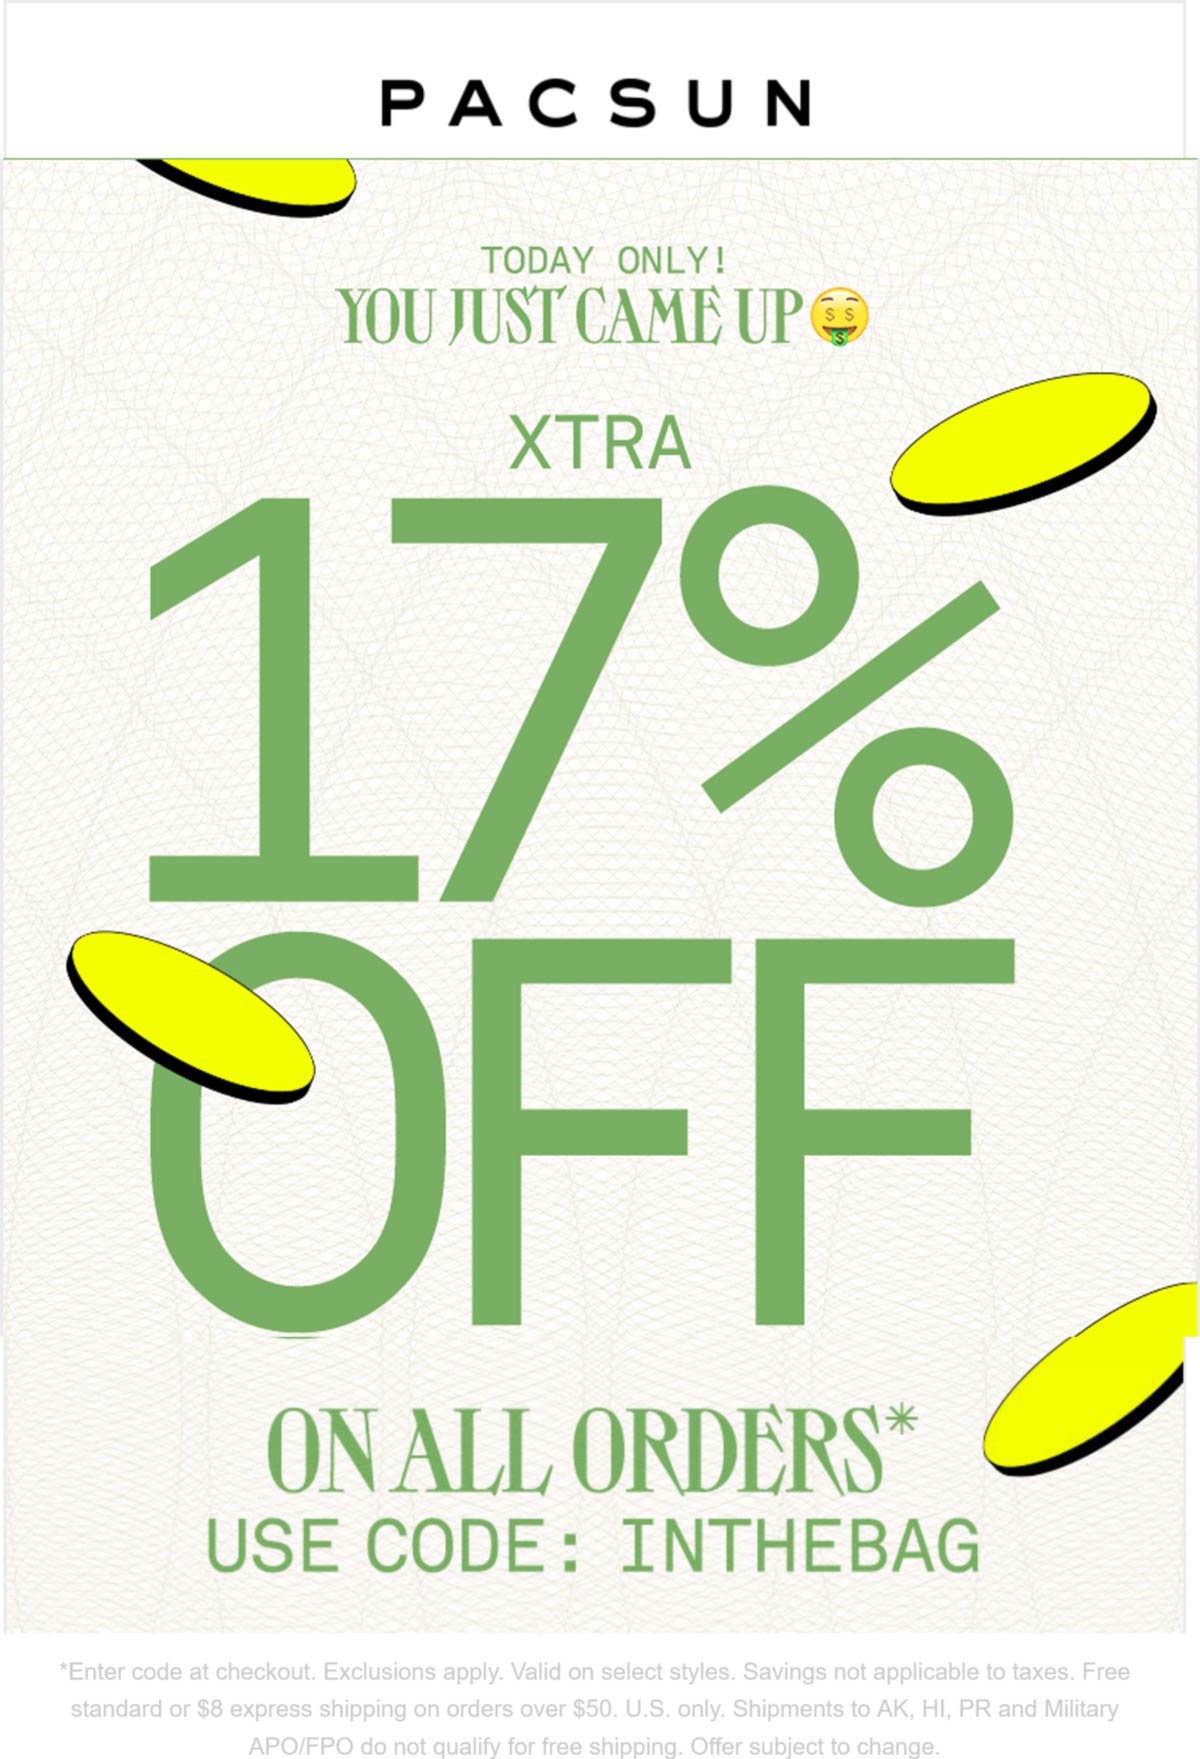 PacSun stores Coupon  Extra 17% off today at PacSun via promo code INTHEBAG #pacsun 